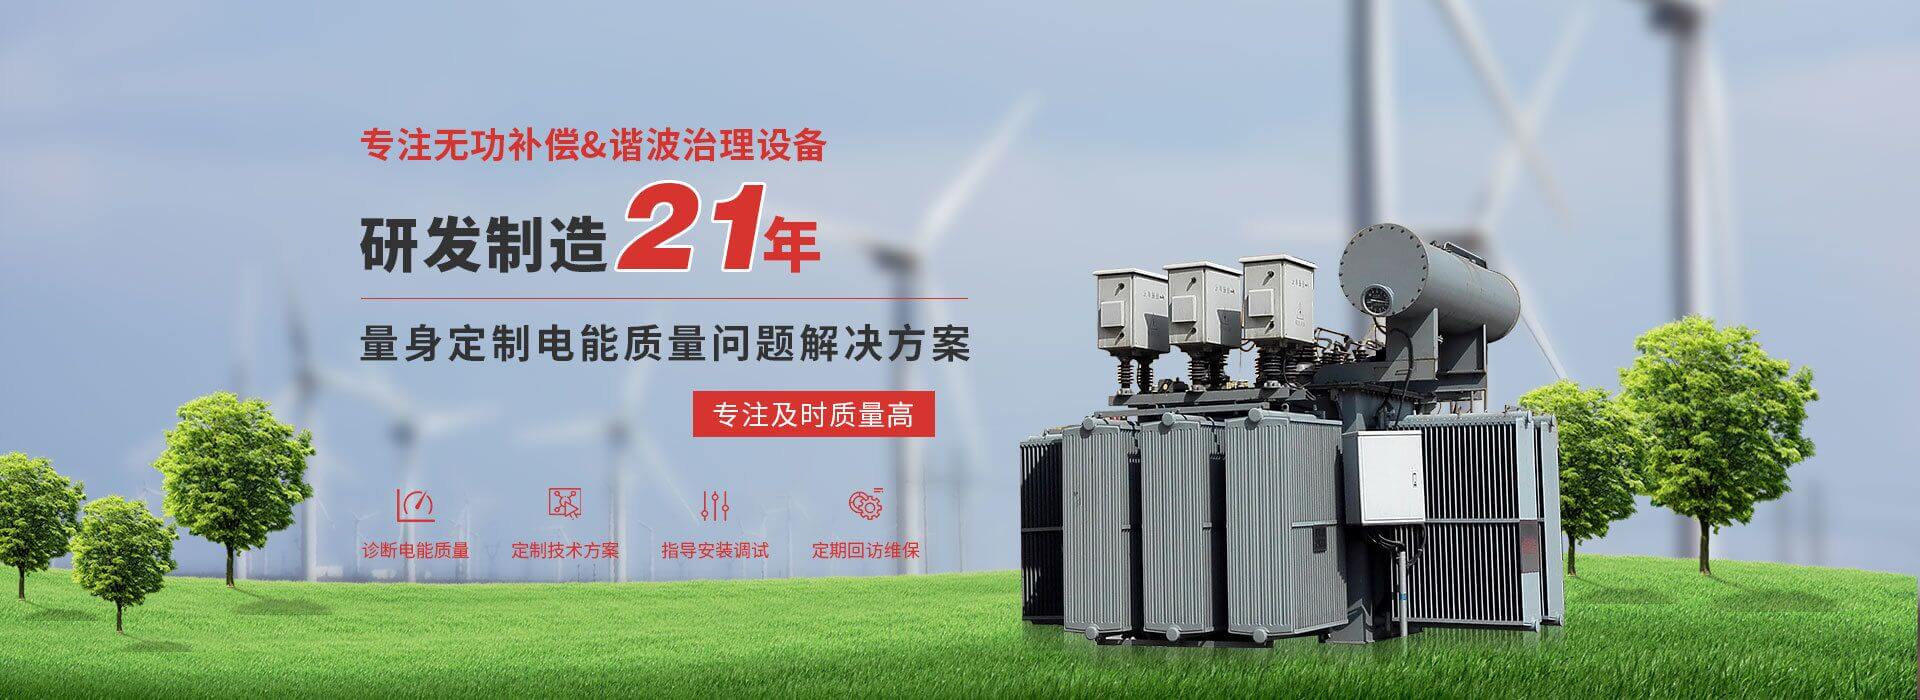 杭州銀湖電氣設備有限公司